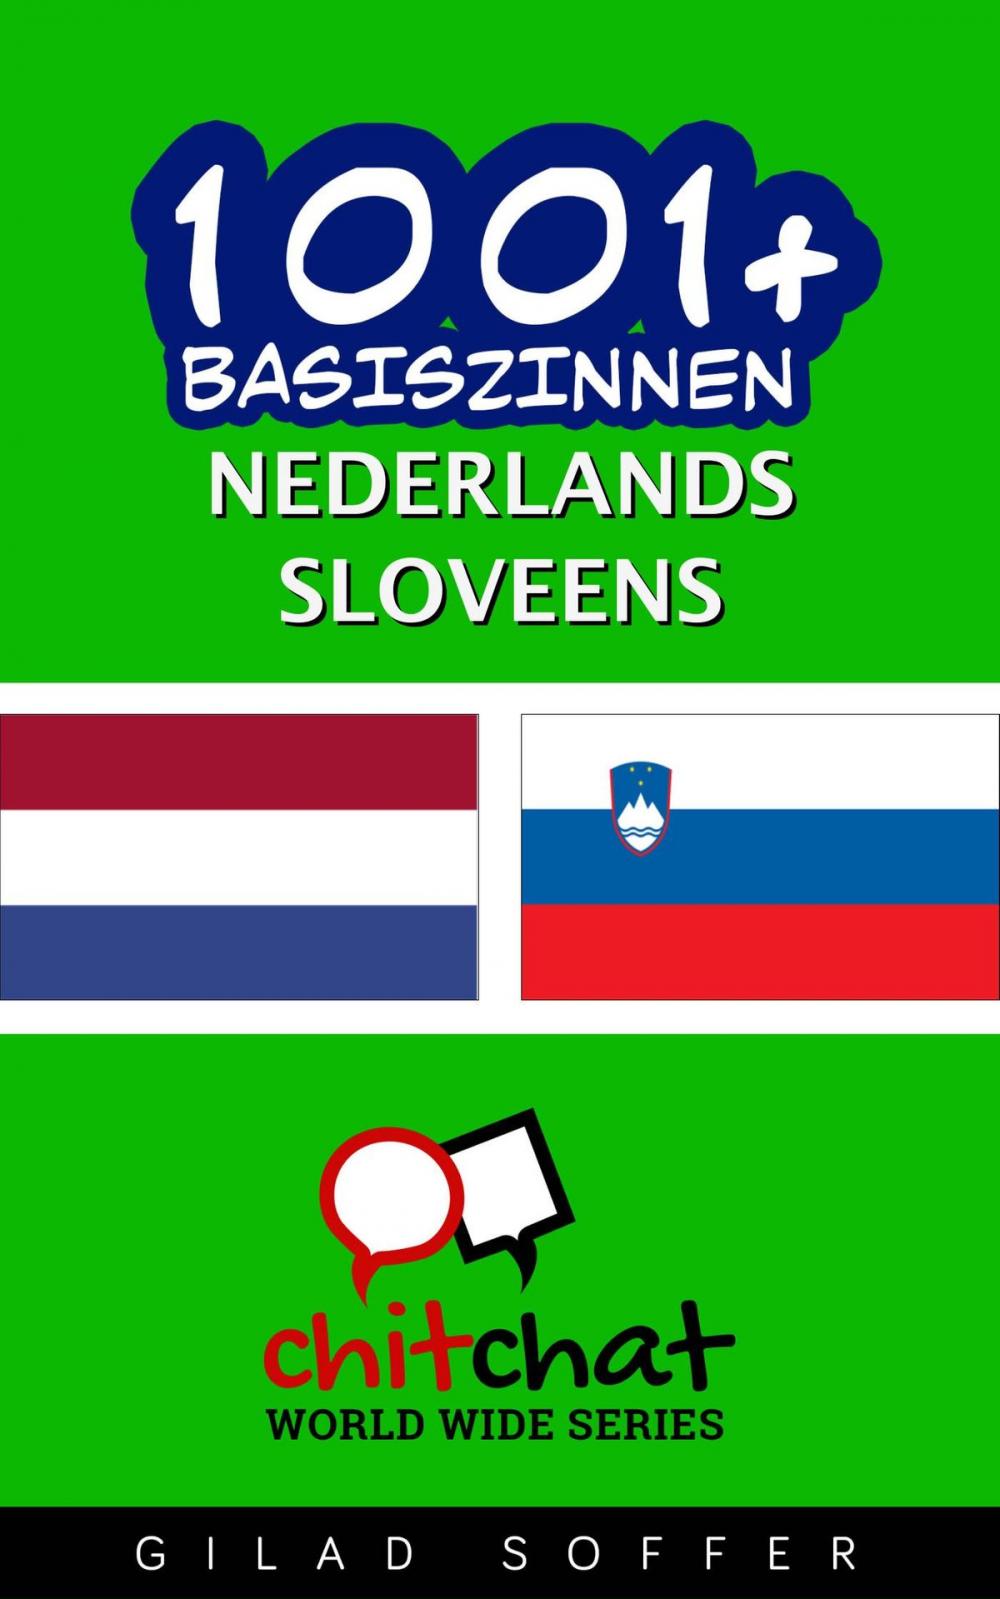 Big bigCover of 1001+ basiszinnen nederlands - Sloveens